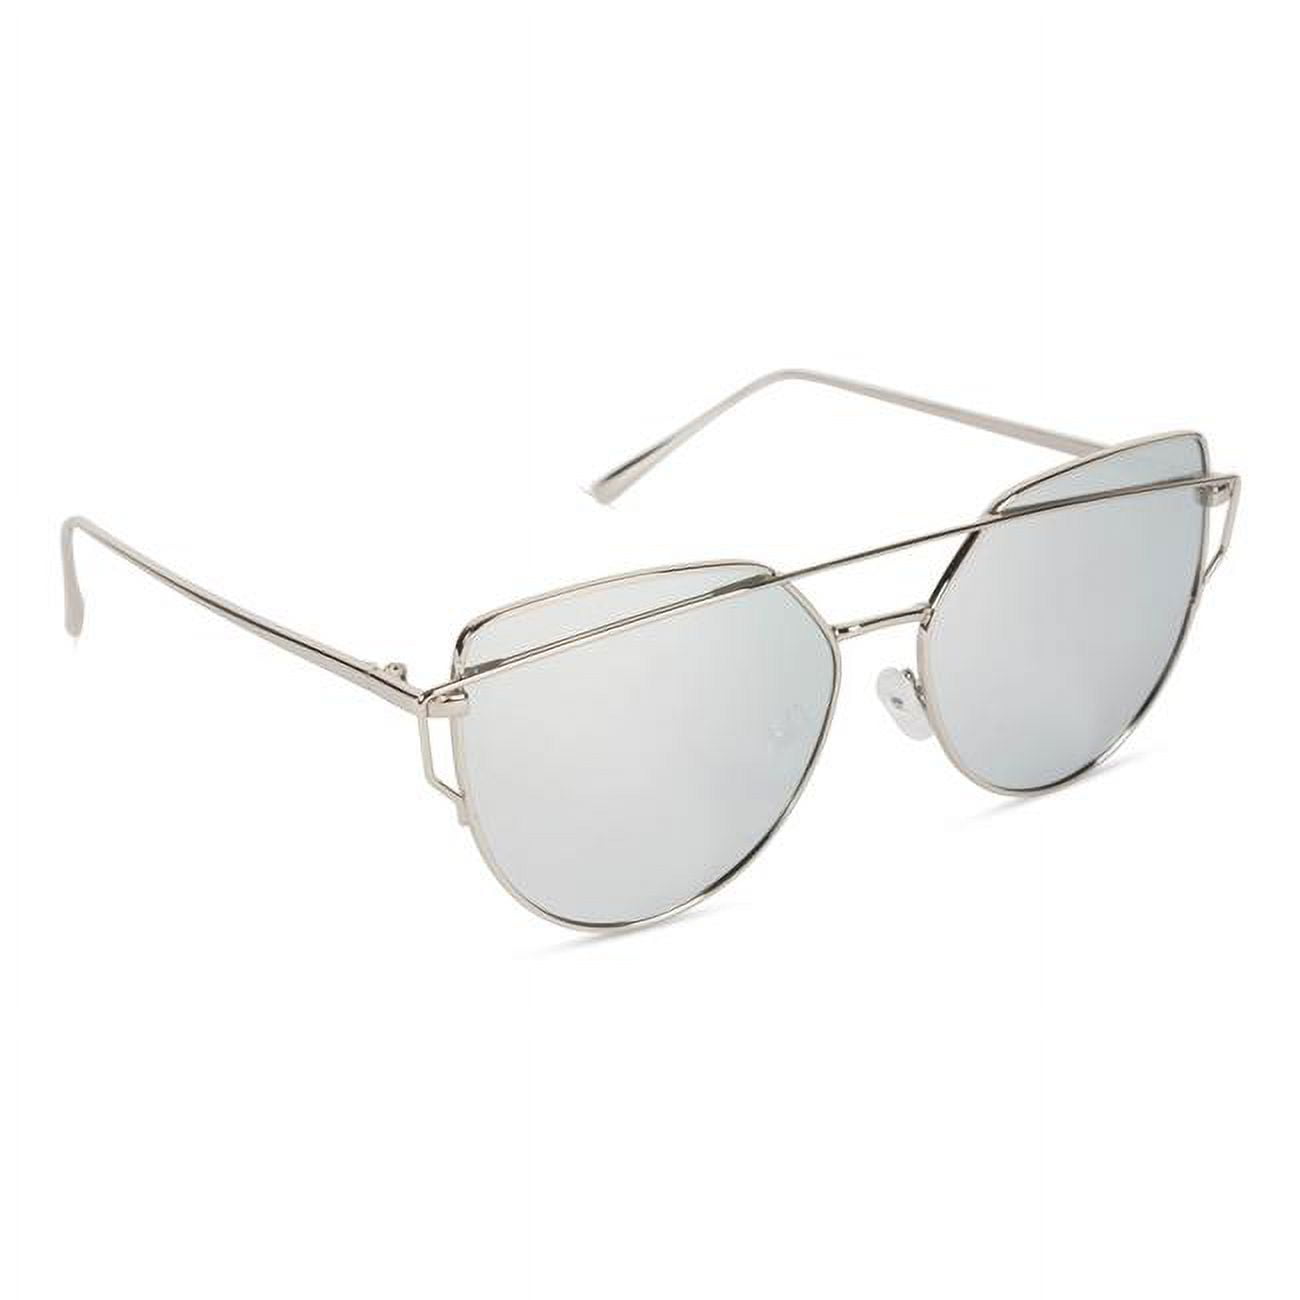 Inner Vision Cat Eye Aviator Metal Frame Cross Bar Sunglasses, Flat  Polarized Lens for Women, Revo 100% UV Protection With Case - Silver Frame,  Silver Lens 